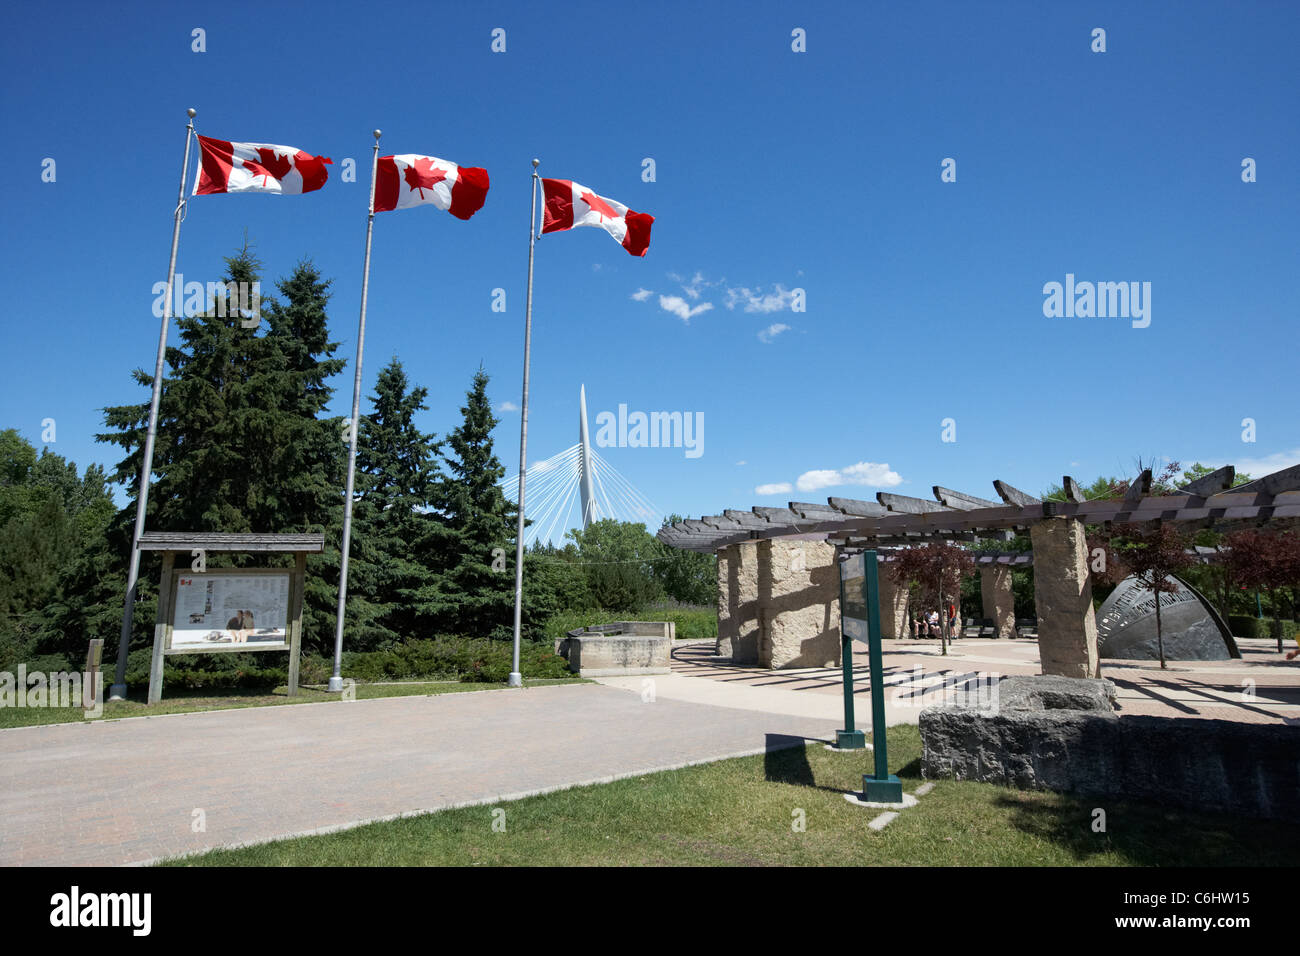 Bandiere canadesi volare sopra le forche sito storico nazionale del Canada Winnipeg Manitoba Canada Foto Stock